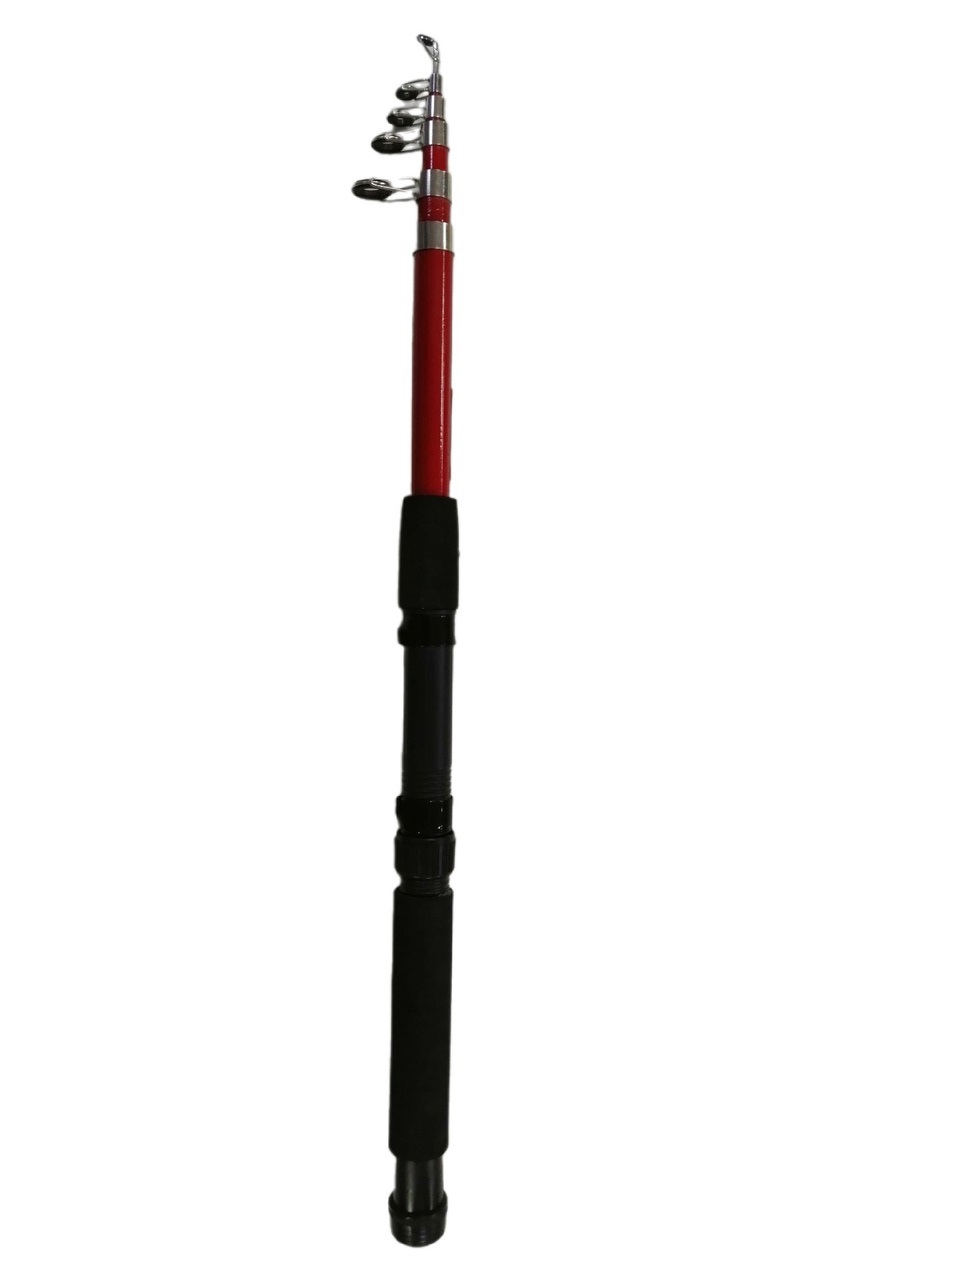 Спиннинг ИРБИТКА телескопический 2,4м. Тест 10-50гр ручка неопрен, стеклопластик Цвет: в ассорт.